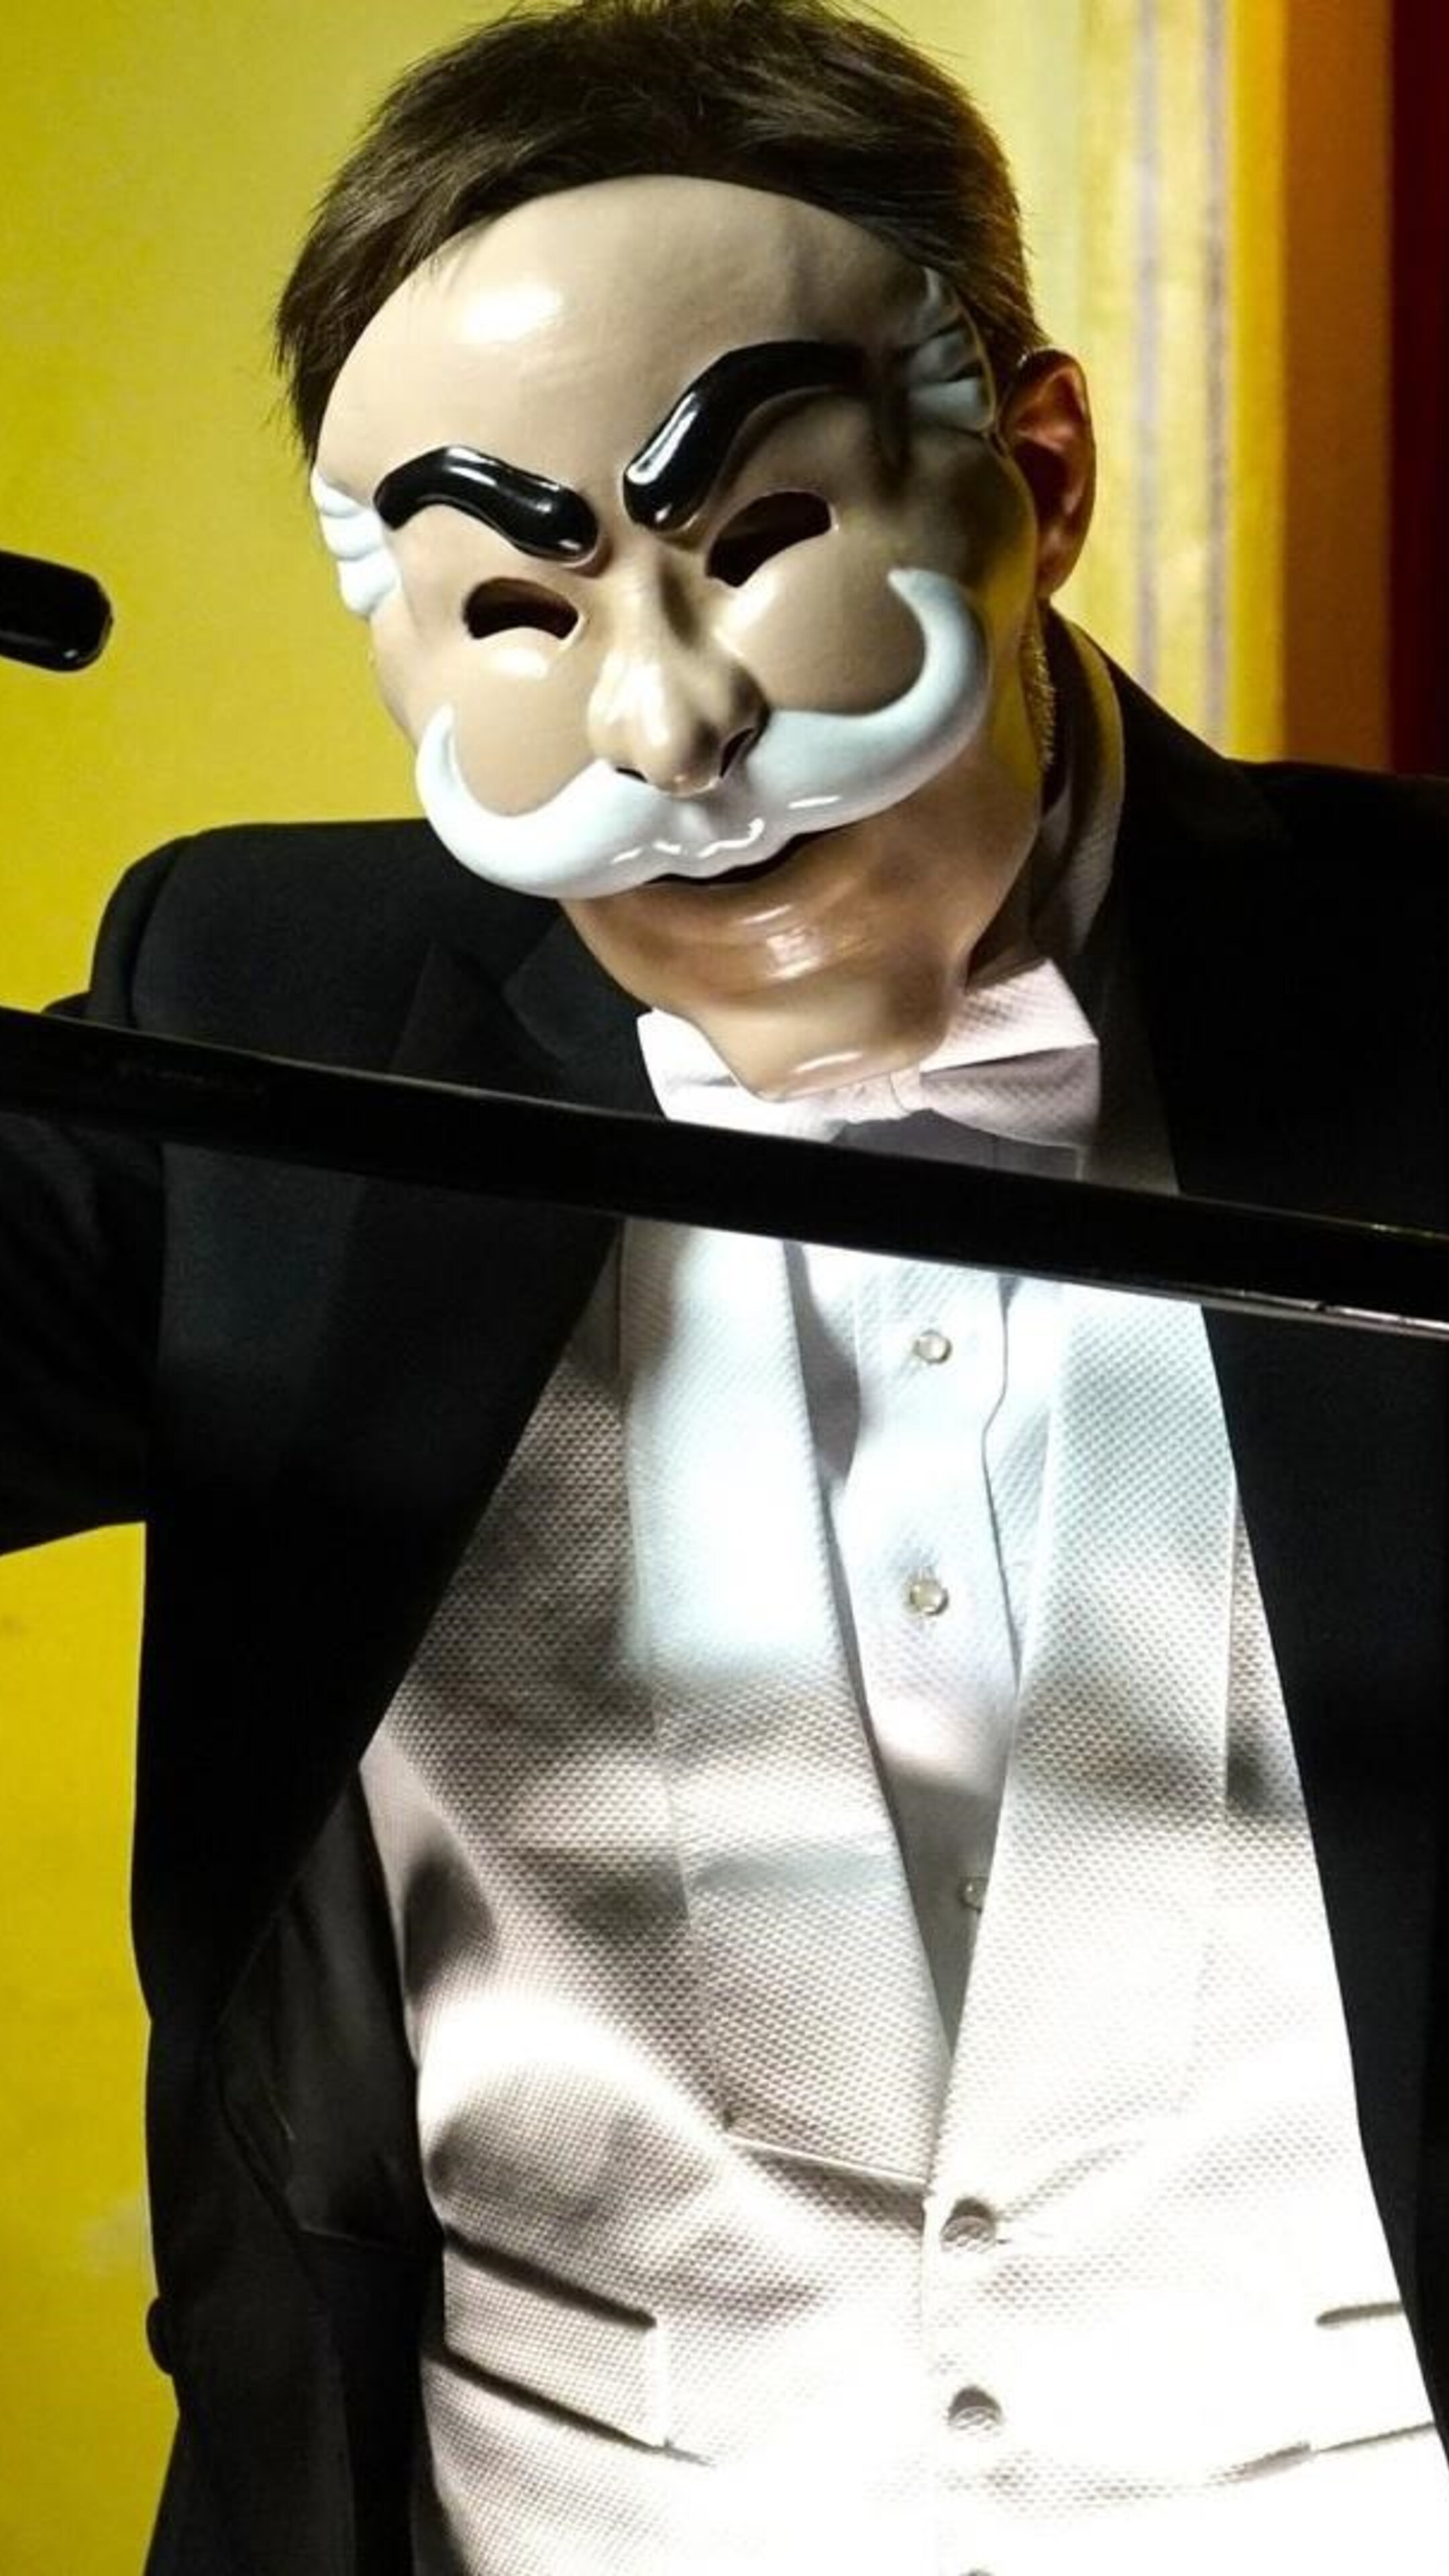 Шоу маска биография. Mr Robot маска. Шоу маска 2 часть. Милохин в шоу маска.